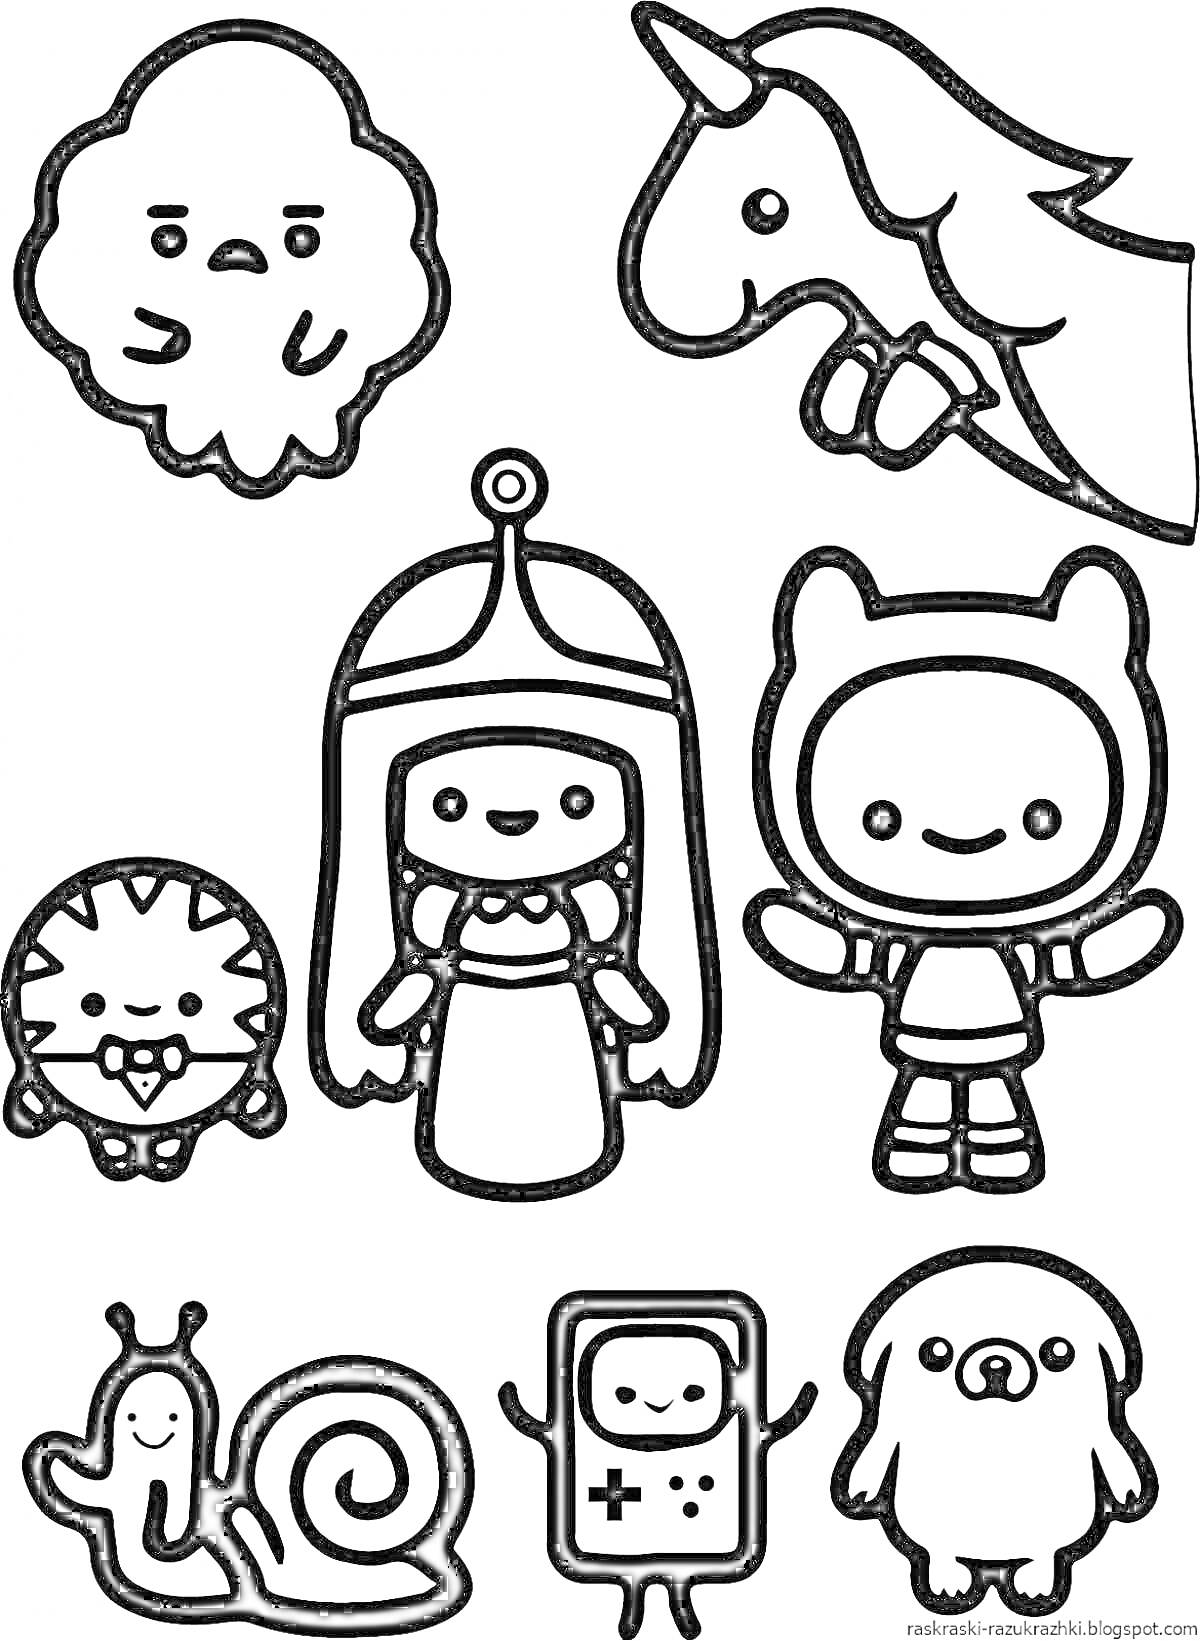 Раскраска Набор персонажей: облако, единорог, тигрёнок, принцесса, мальчик в костюме, улитка, прямоугольный персонаж и собака